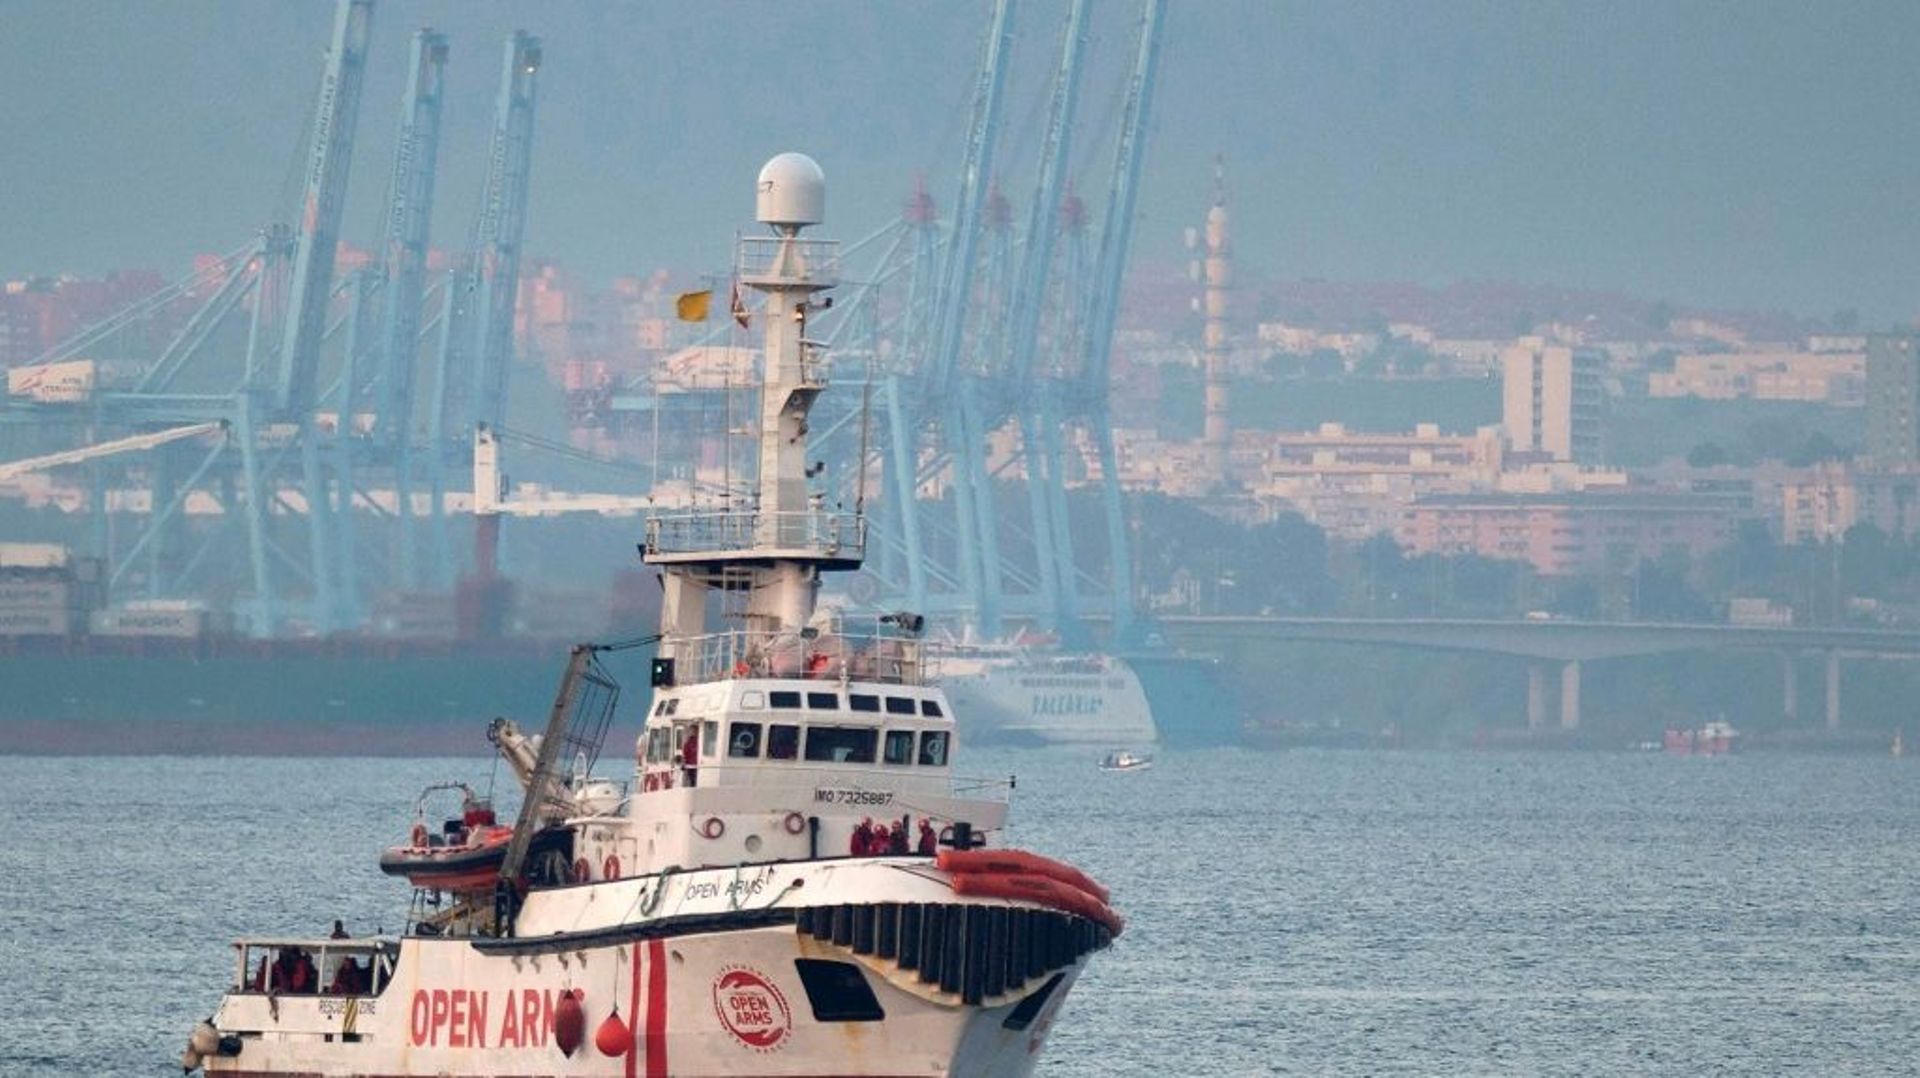 Le bateau de l'ONG Proactiva Open Arms approche du port d'Algésiras, dans le sud de l'Espagne, le 28 décembre 2018